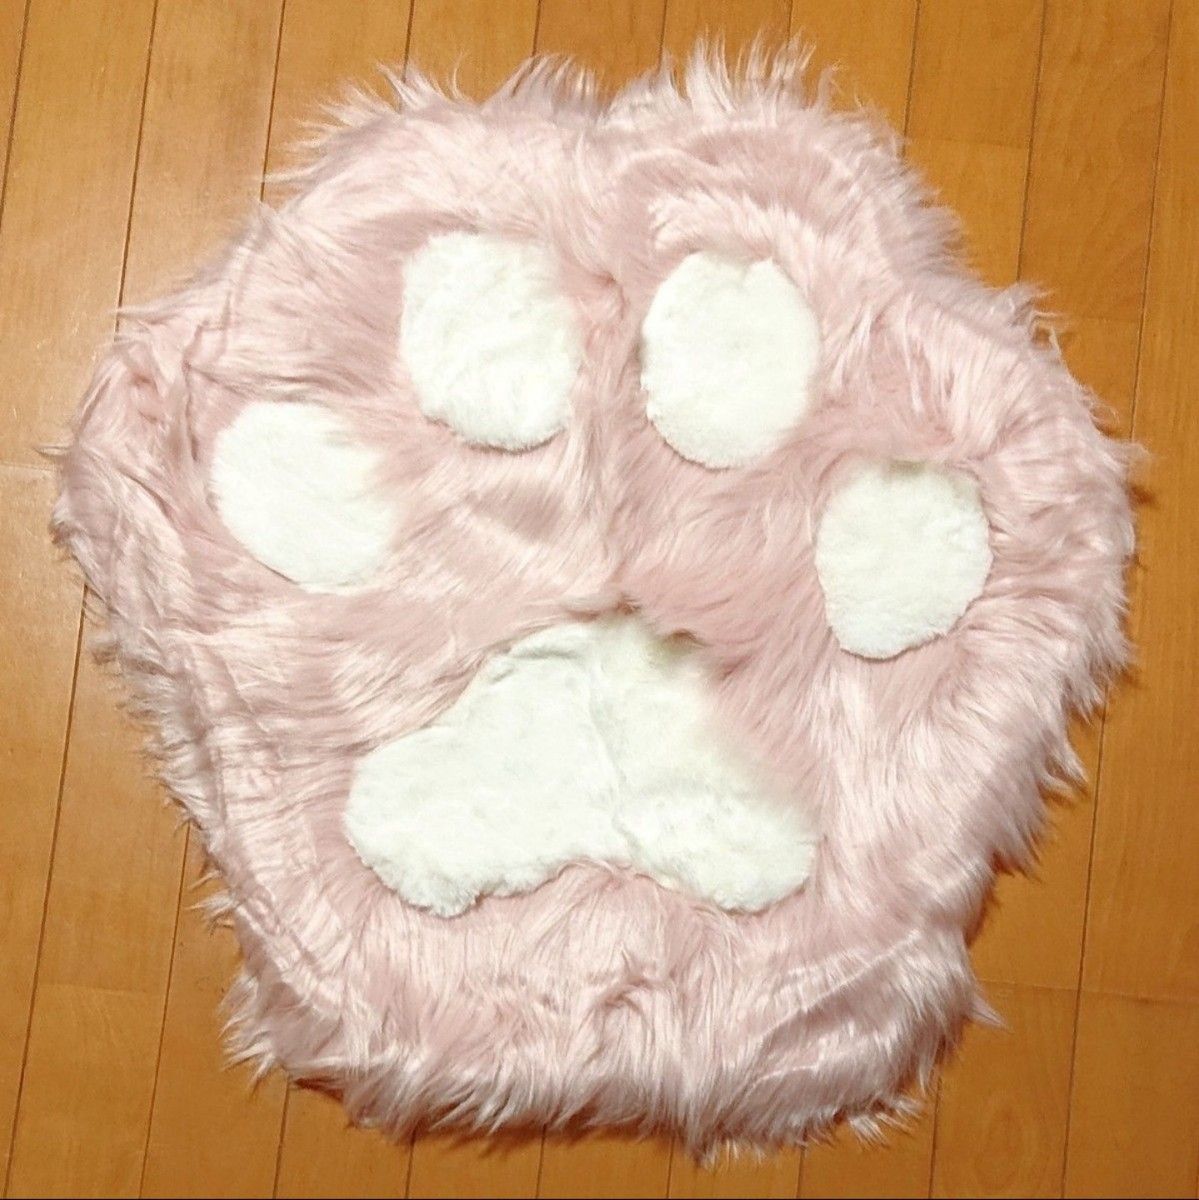 にくきゅう ふわふわカーペット ピンク マット ラグ インテリア 肉球 猫 ねこ アニマル 動物 可愛い かわいい もふもふ